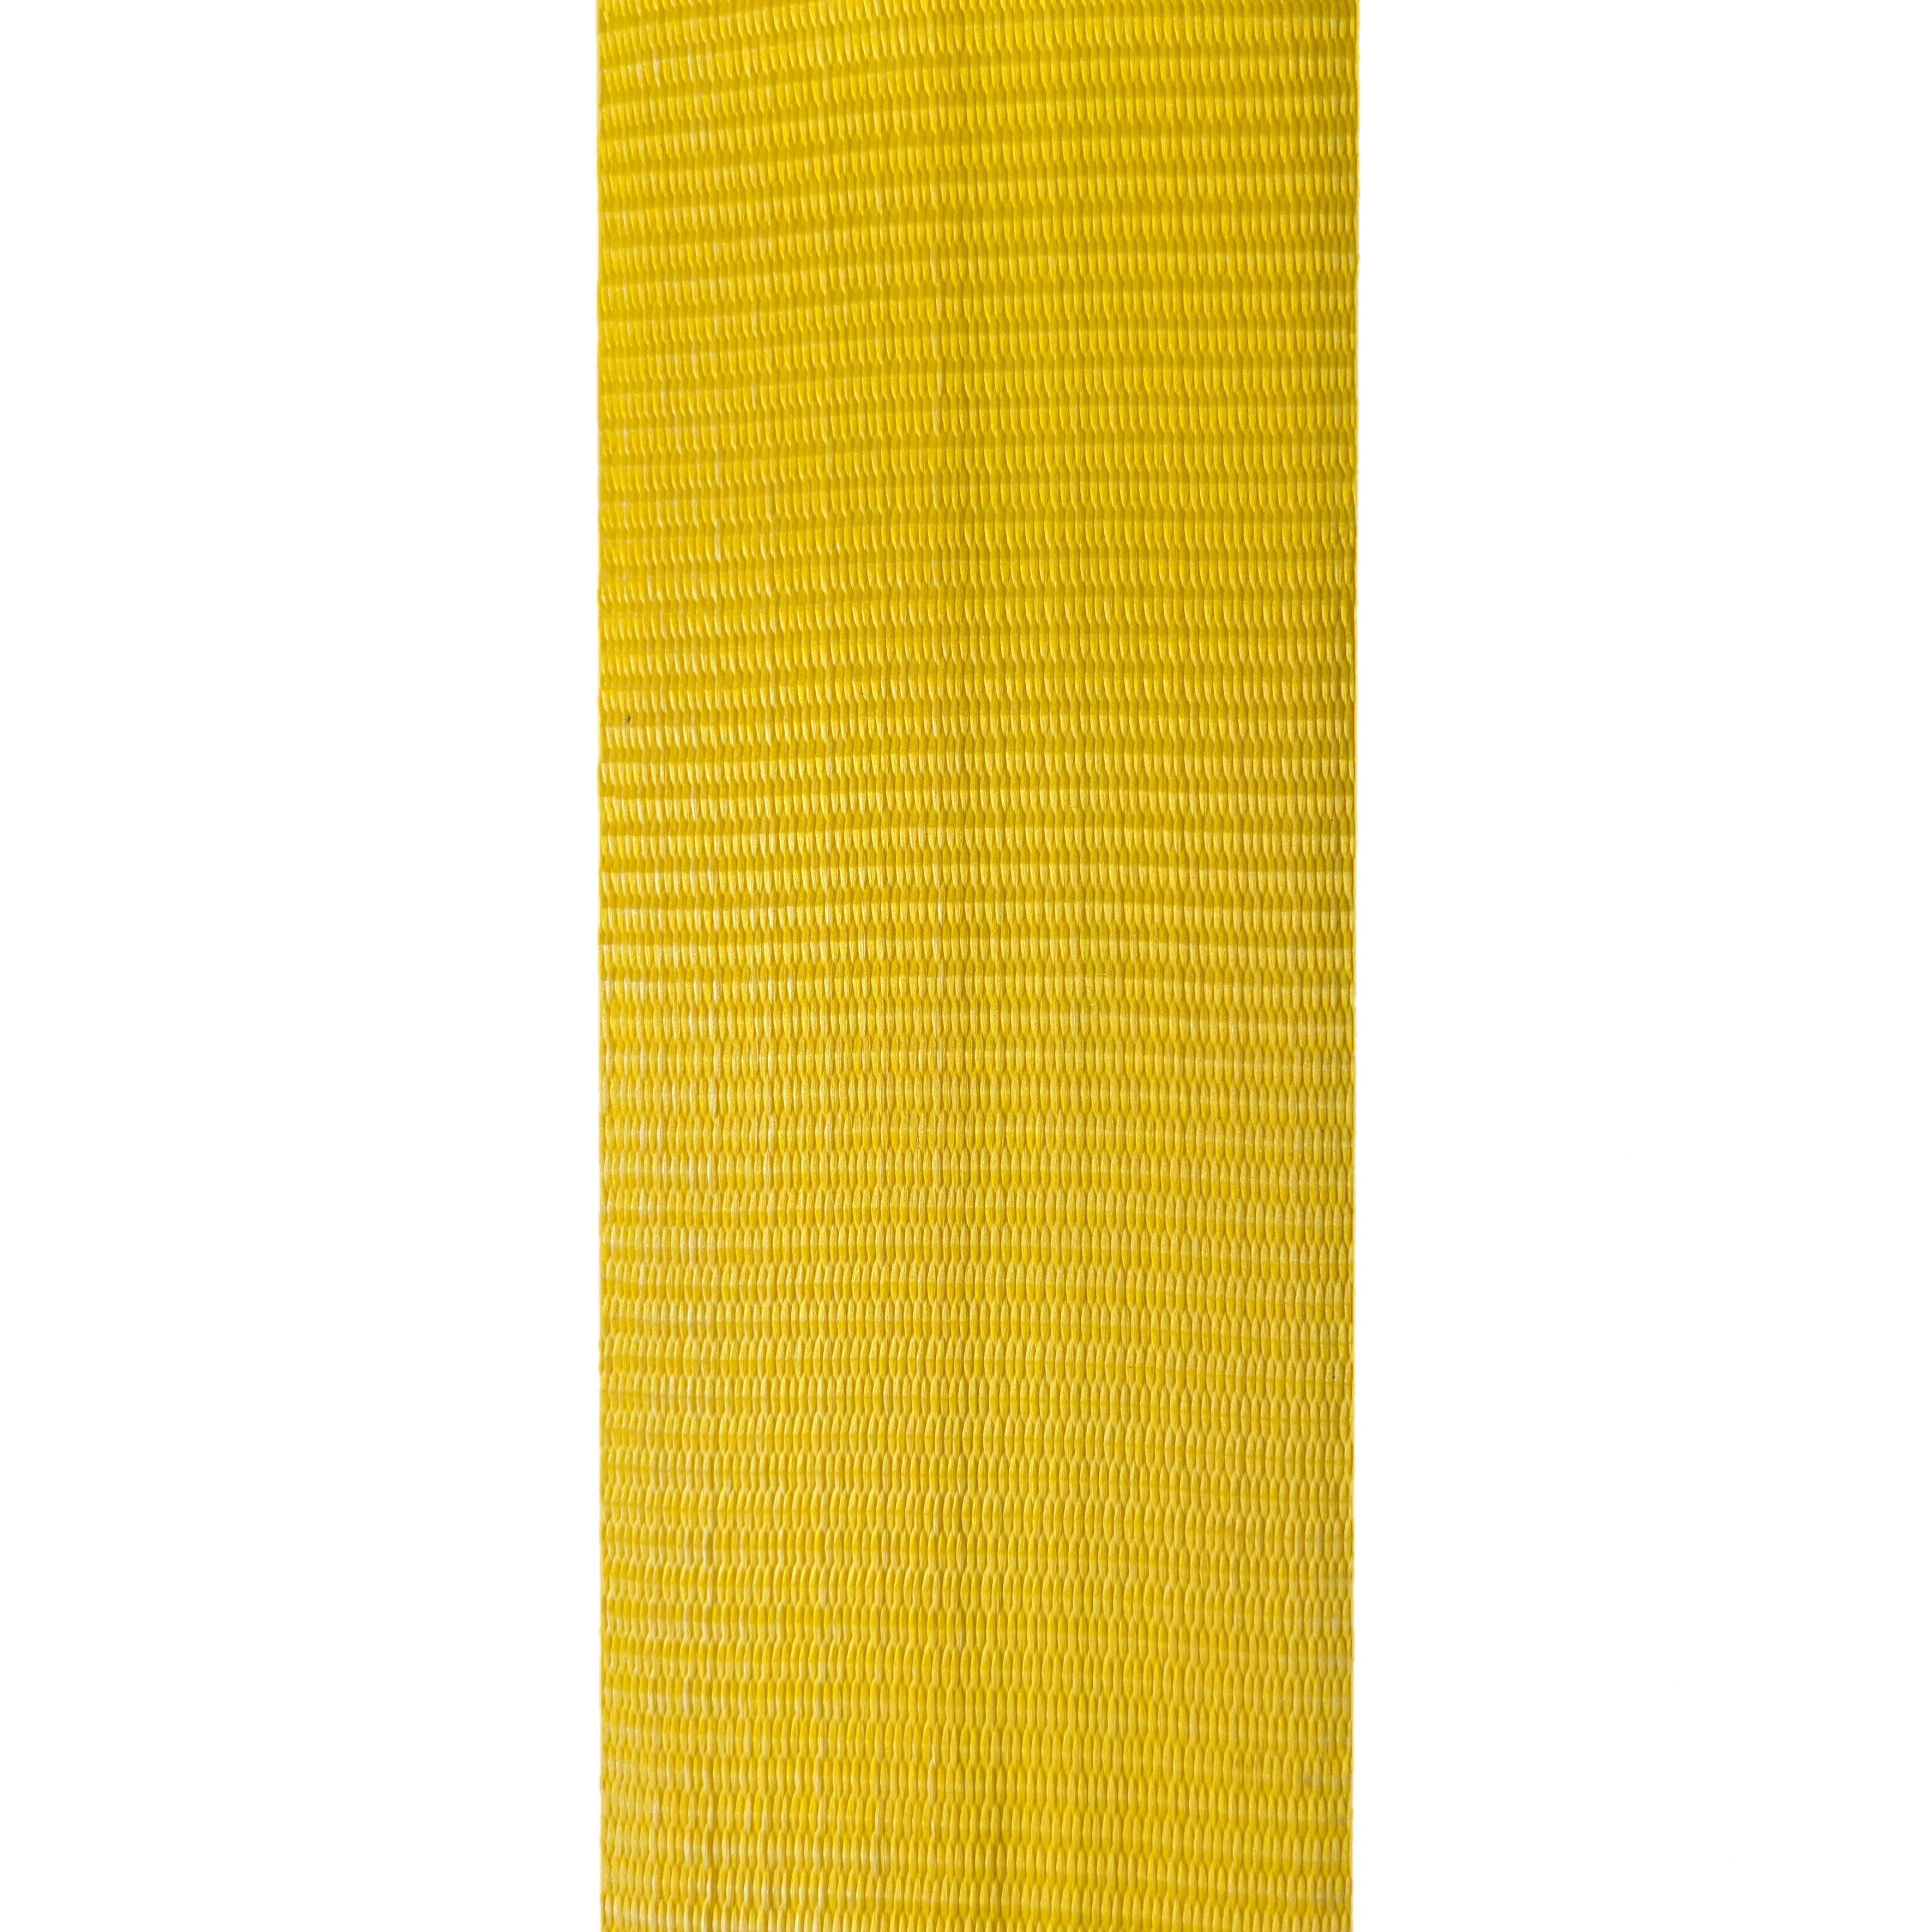 Gurtband 60 - 120 mm breit